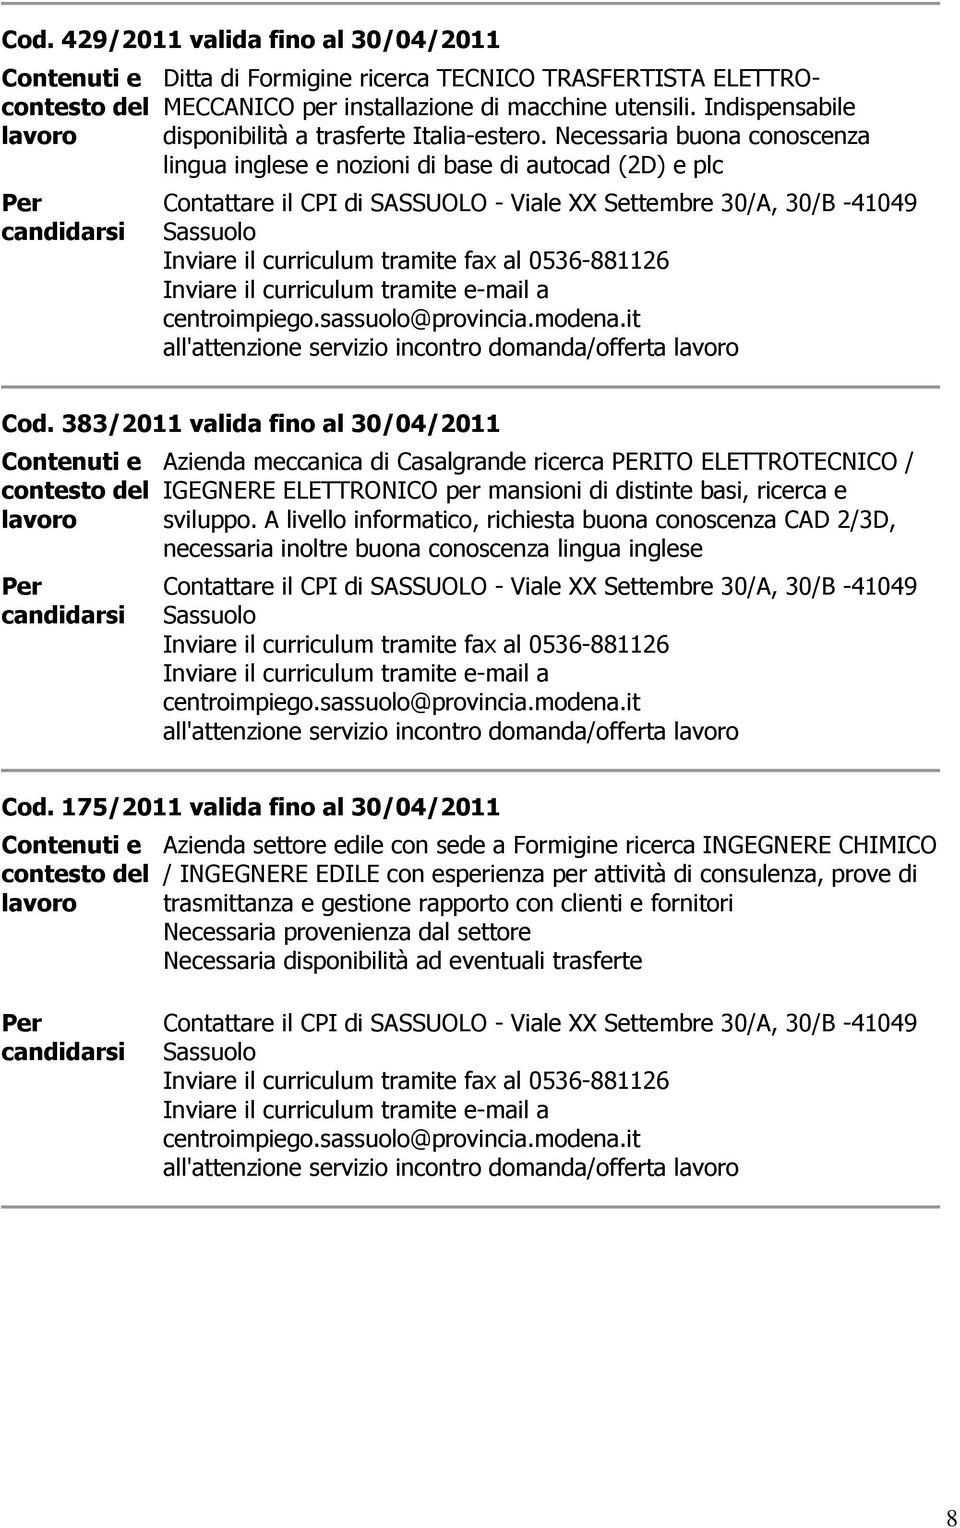 383/2011 valida fino al 30/04/2011 Azienda meccanica di Casalgrande ricerca PERITO ELETTROTECNICO / IGEGNERE ELETTRONICO per mansioni di distinte basi, ricerca e sviluppo.